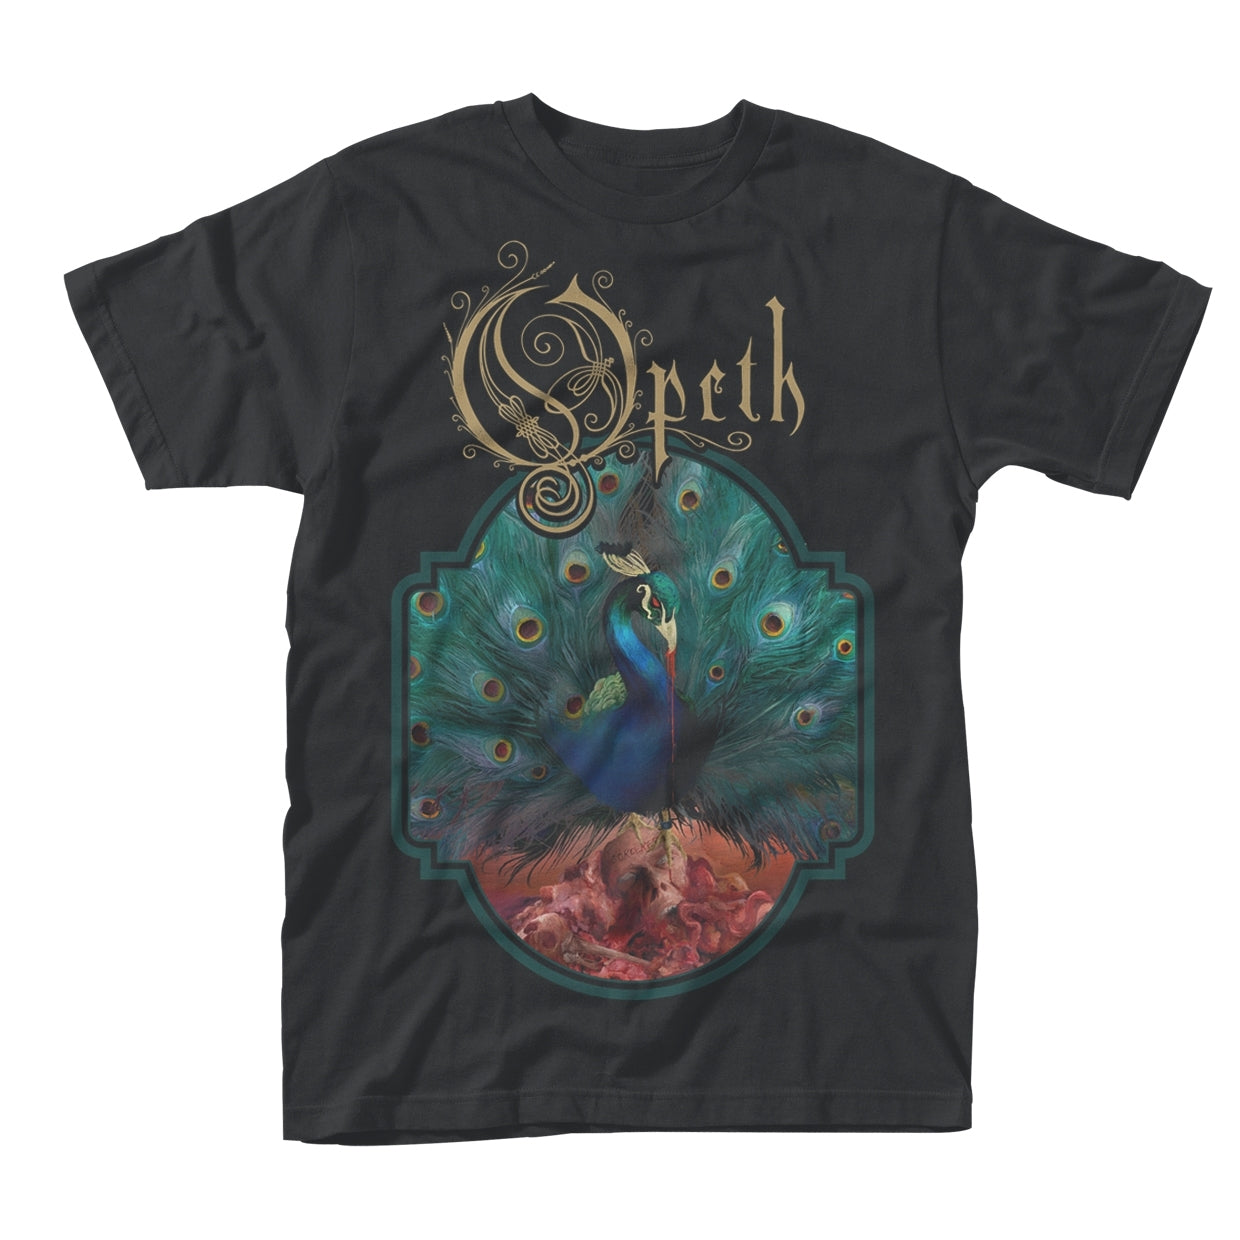 Opeth - Sorceress Short Sleeved T-shirt